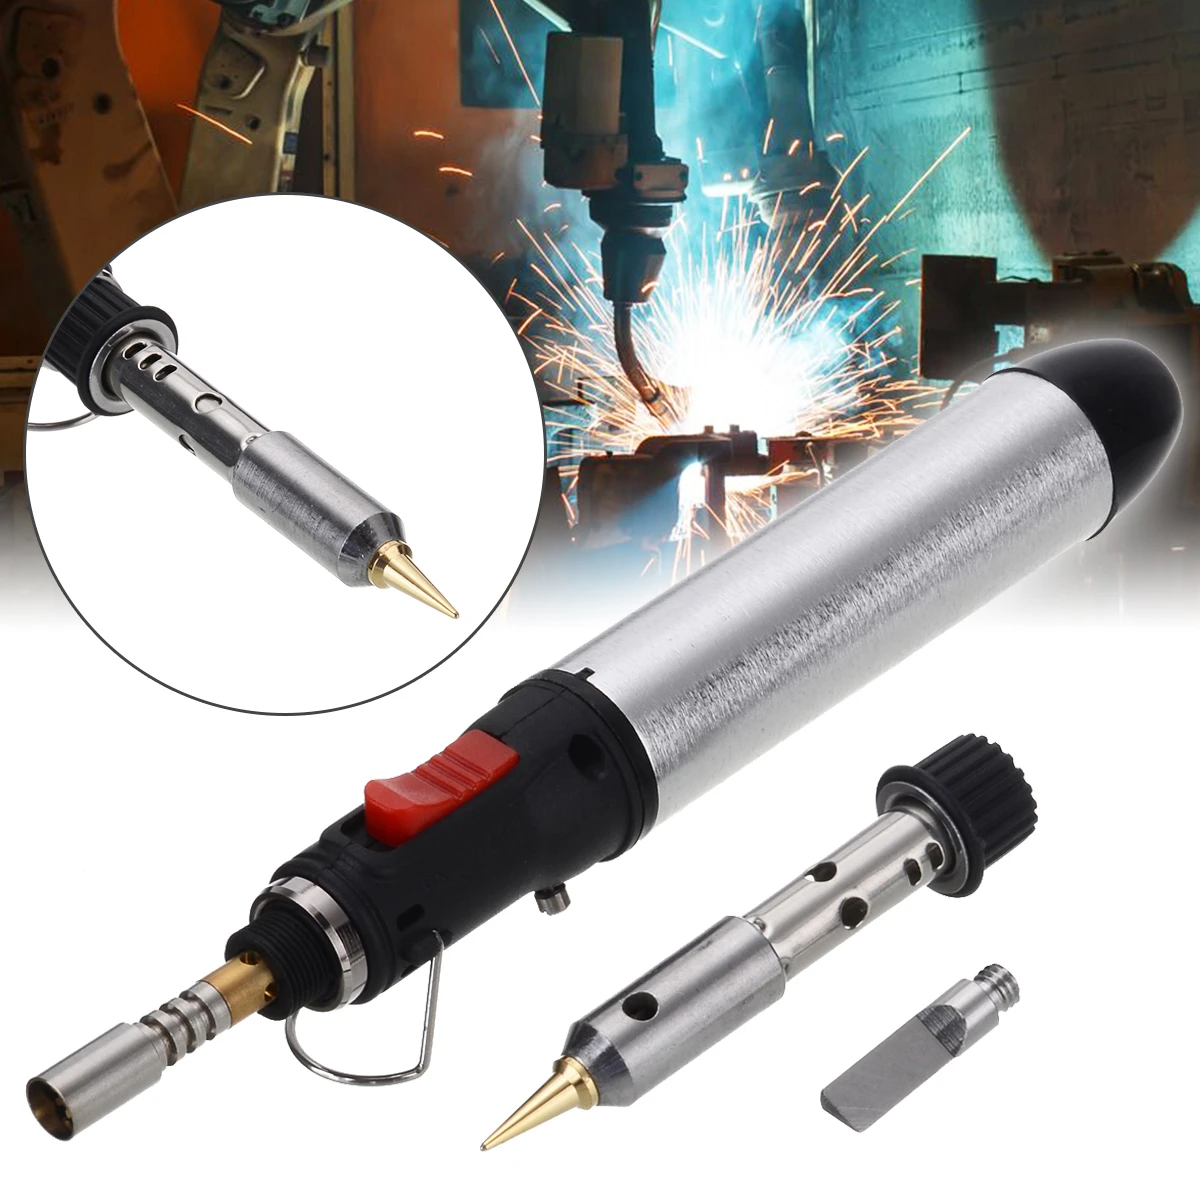 New 12ml Gas Blow Torch Welding Solder Iron Gun Tool Cordless Pen Burner UK